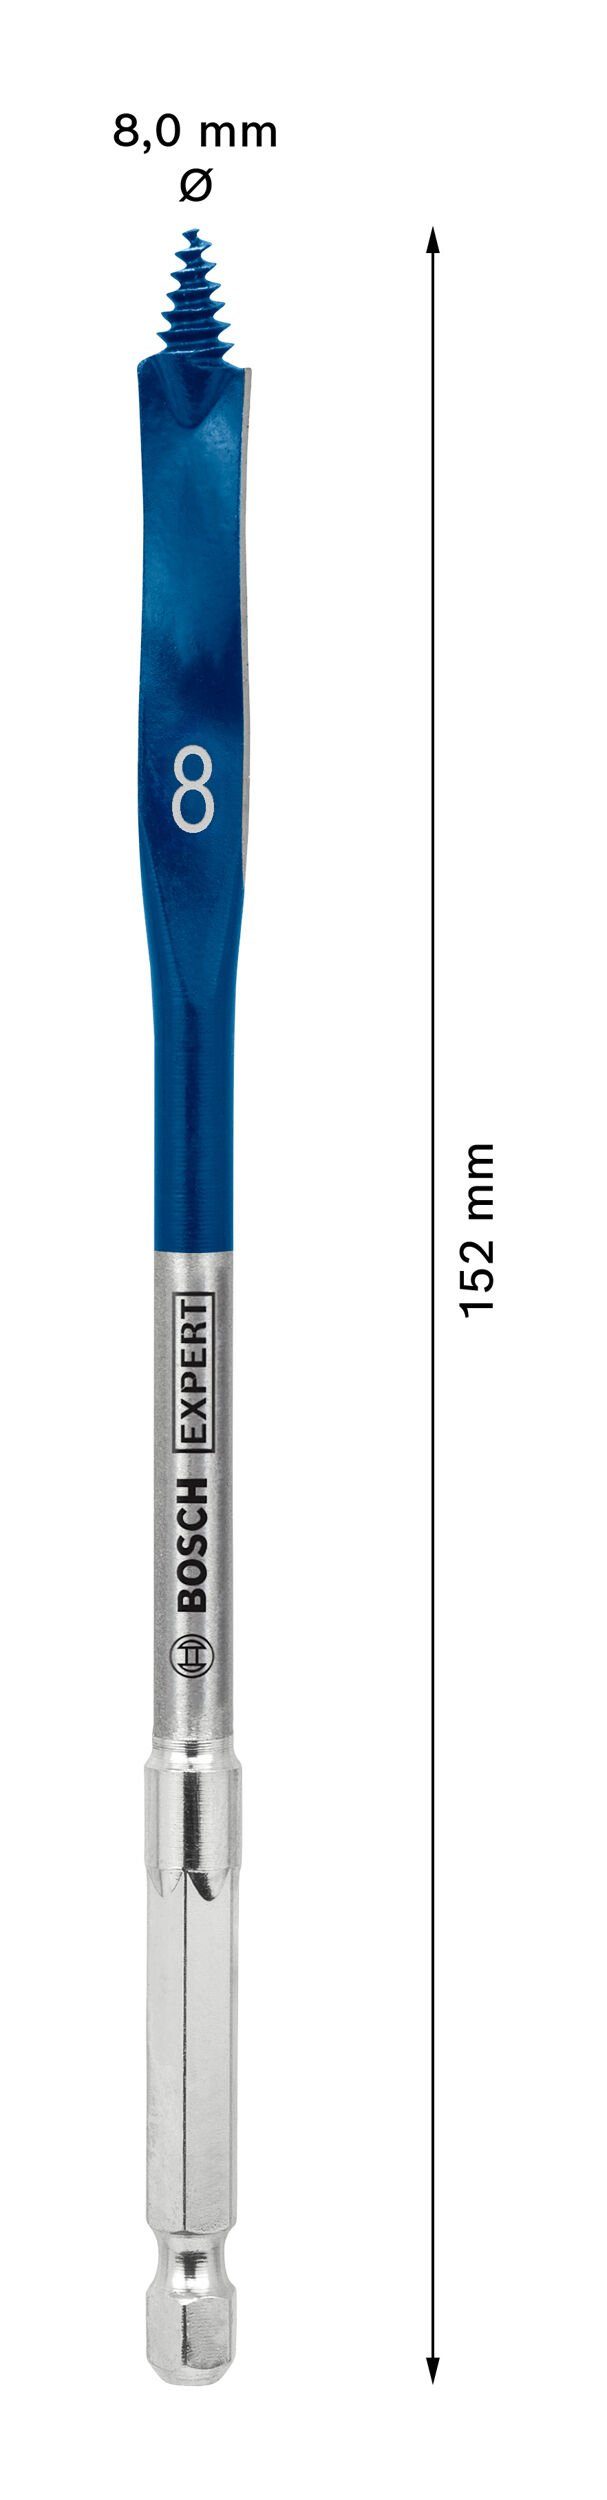 Flachfräsbohrer Expert Accessories x Speed, BOSCH Sechskant Holzbohrer - SelfCut 8 Bosch 152 mm